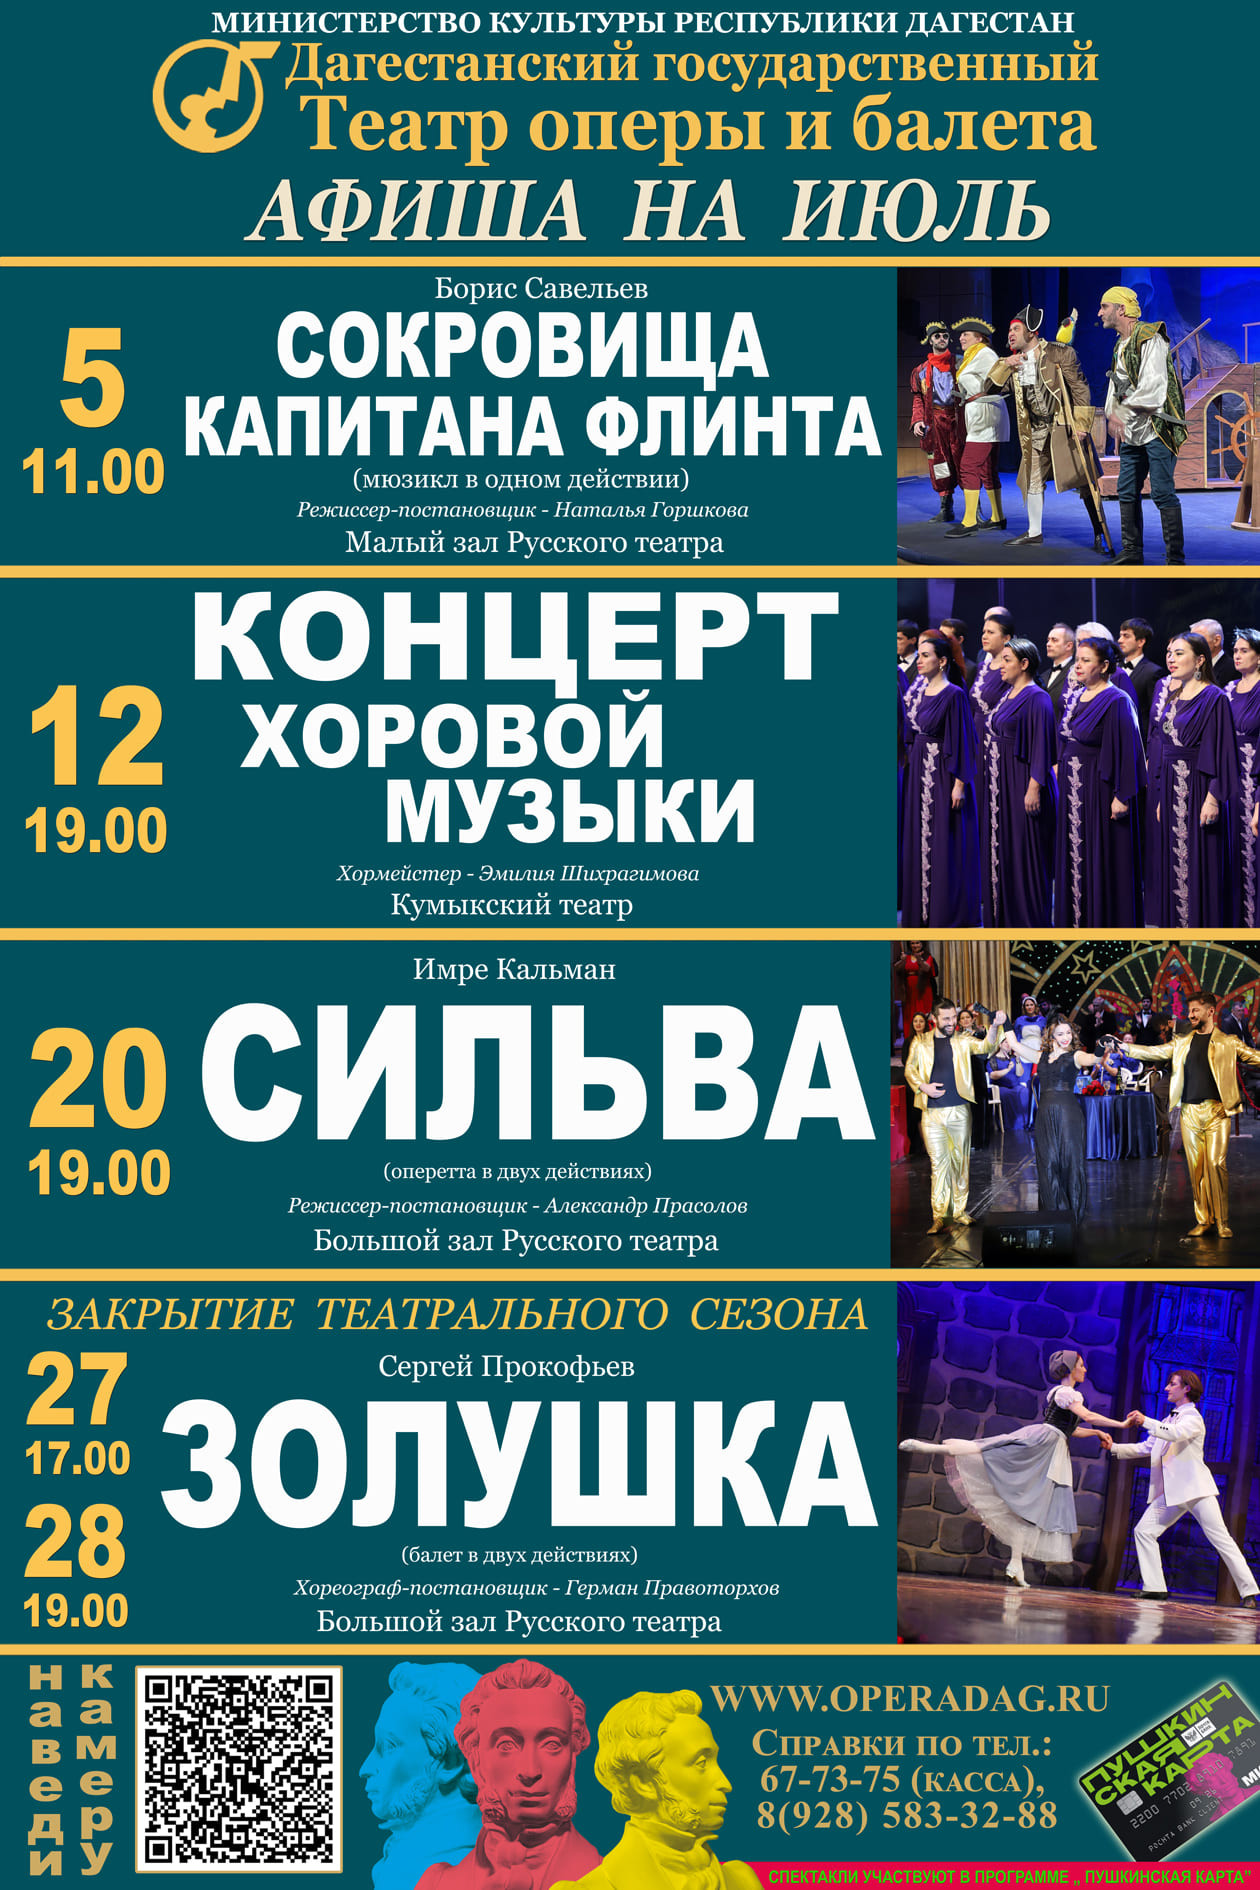 Афиша театра оперы и балета на июль.